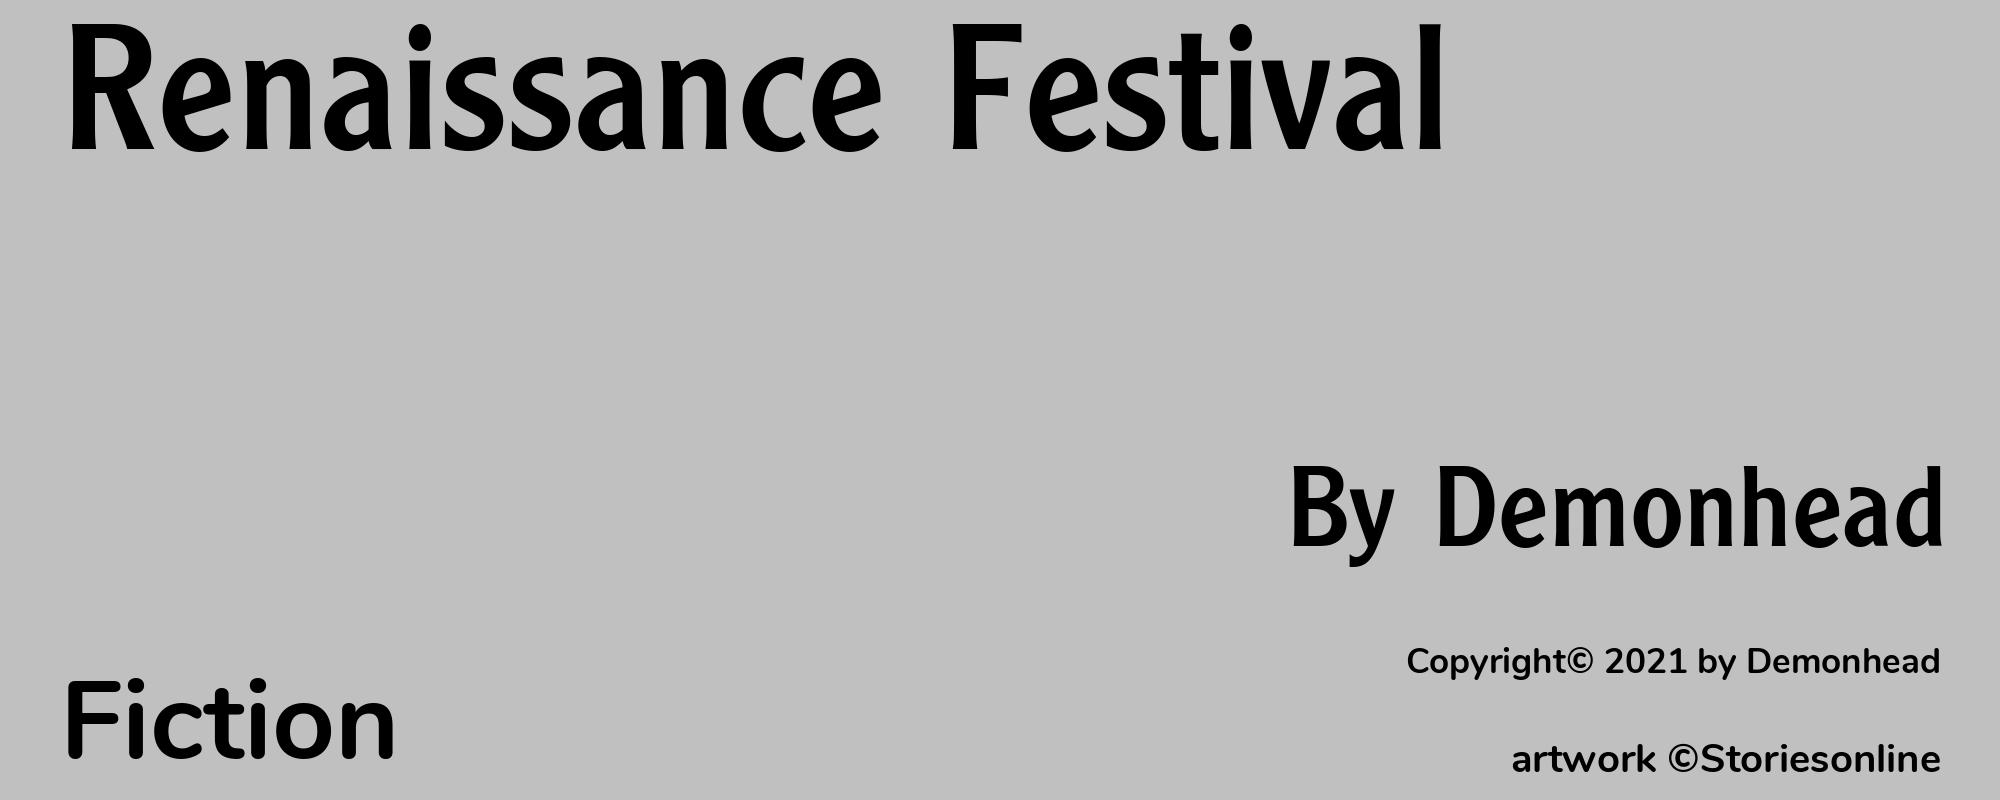 Renaissance Festival - Cover